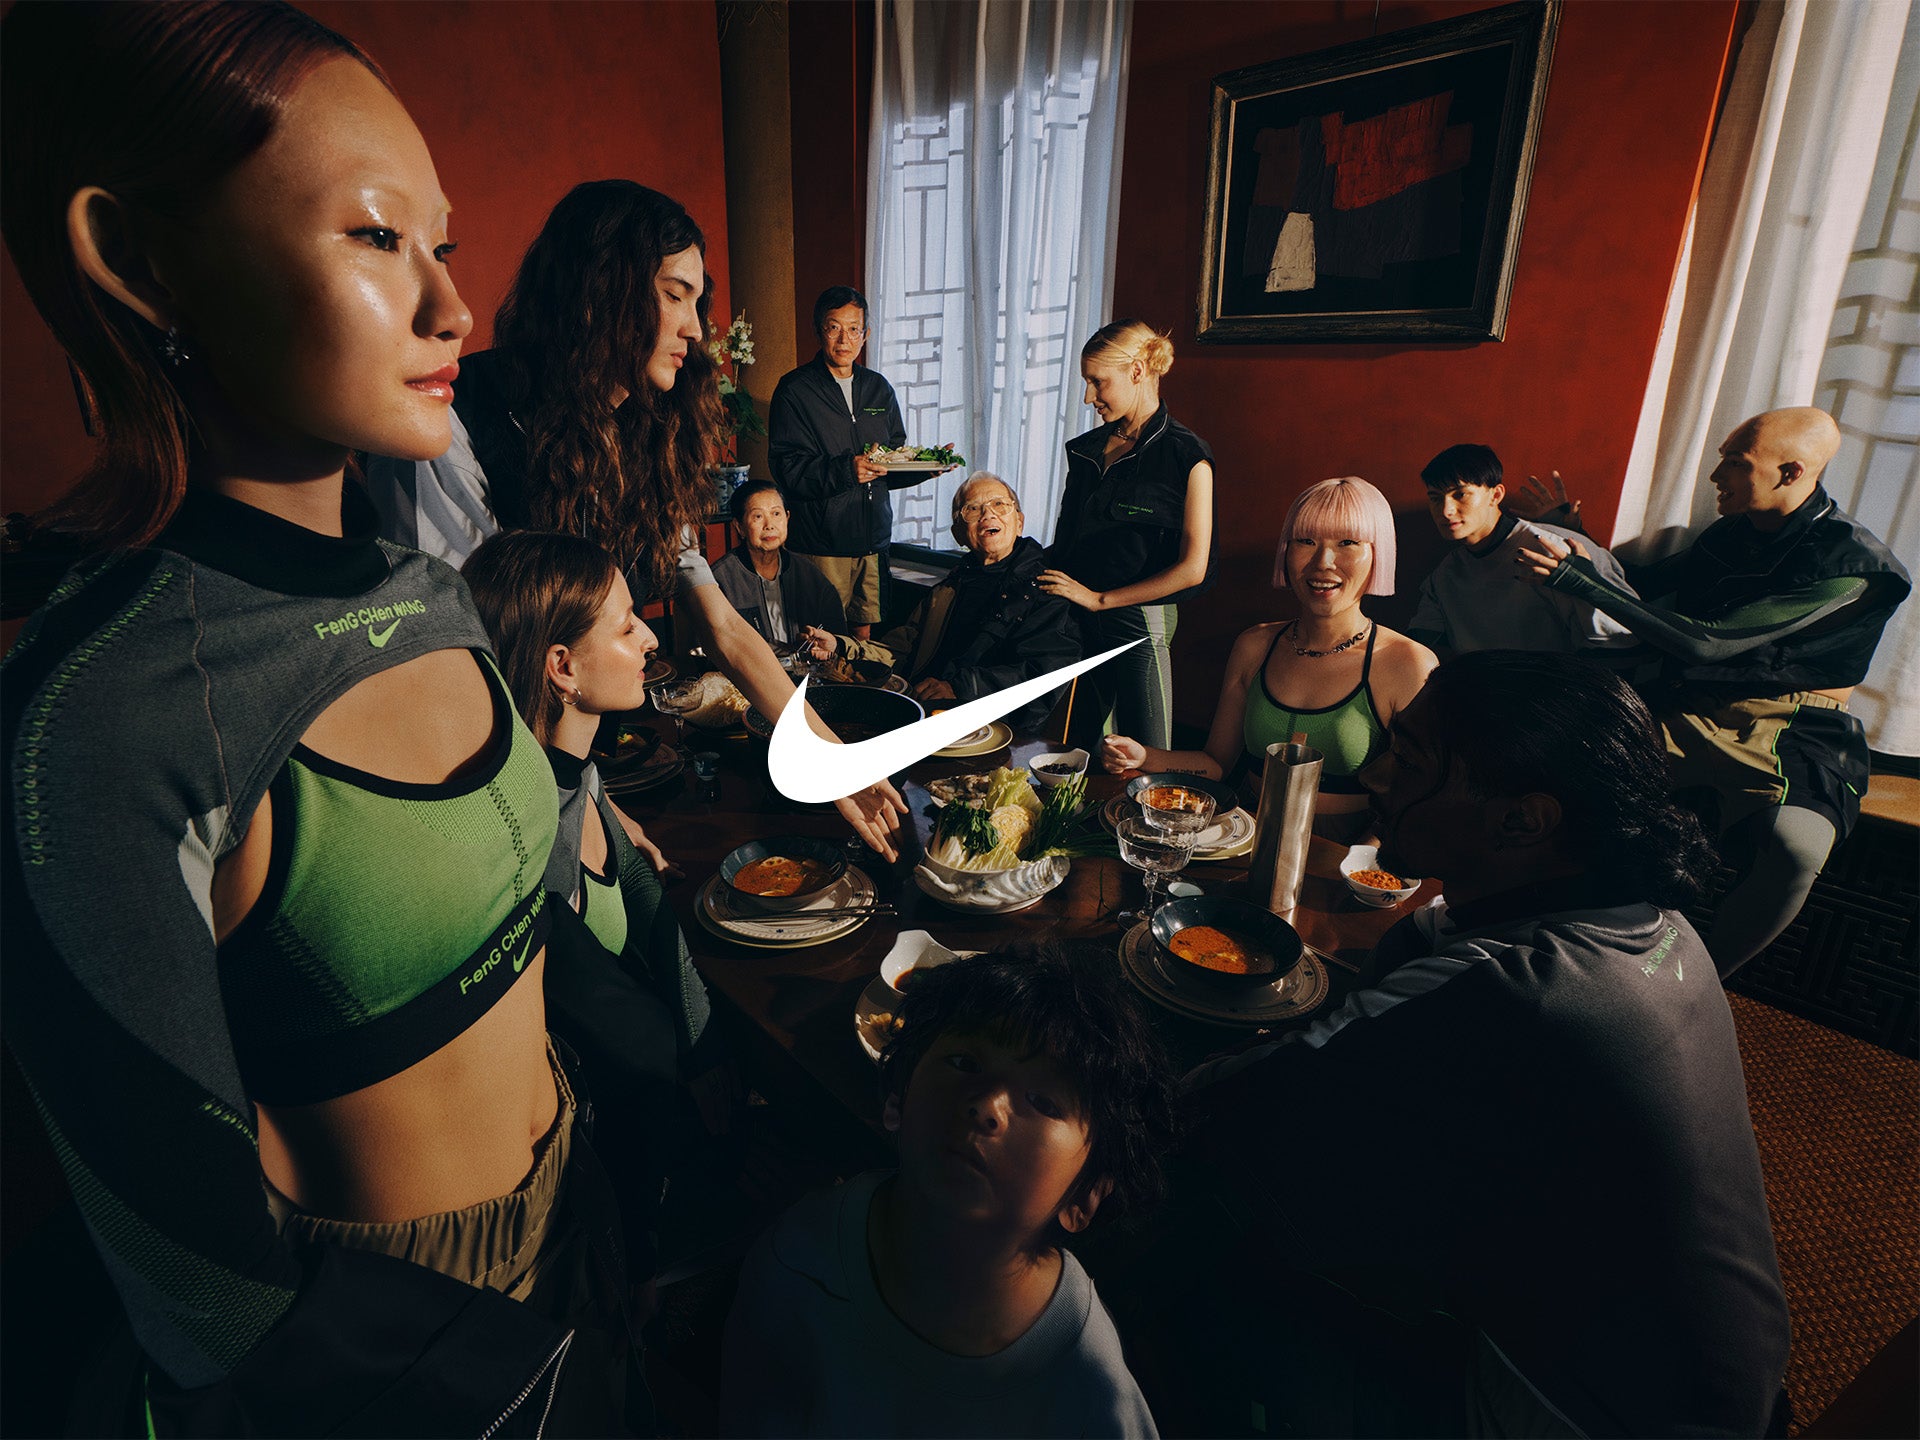 Leggings Nike x Feng Chen Wang para mulher. Nike PT